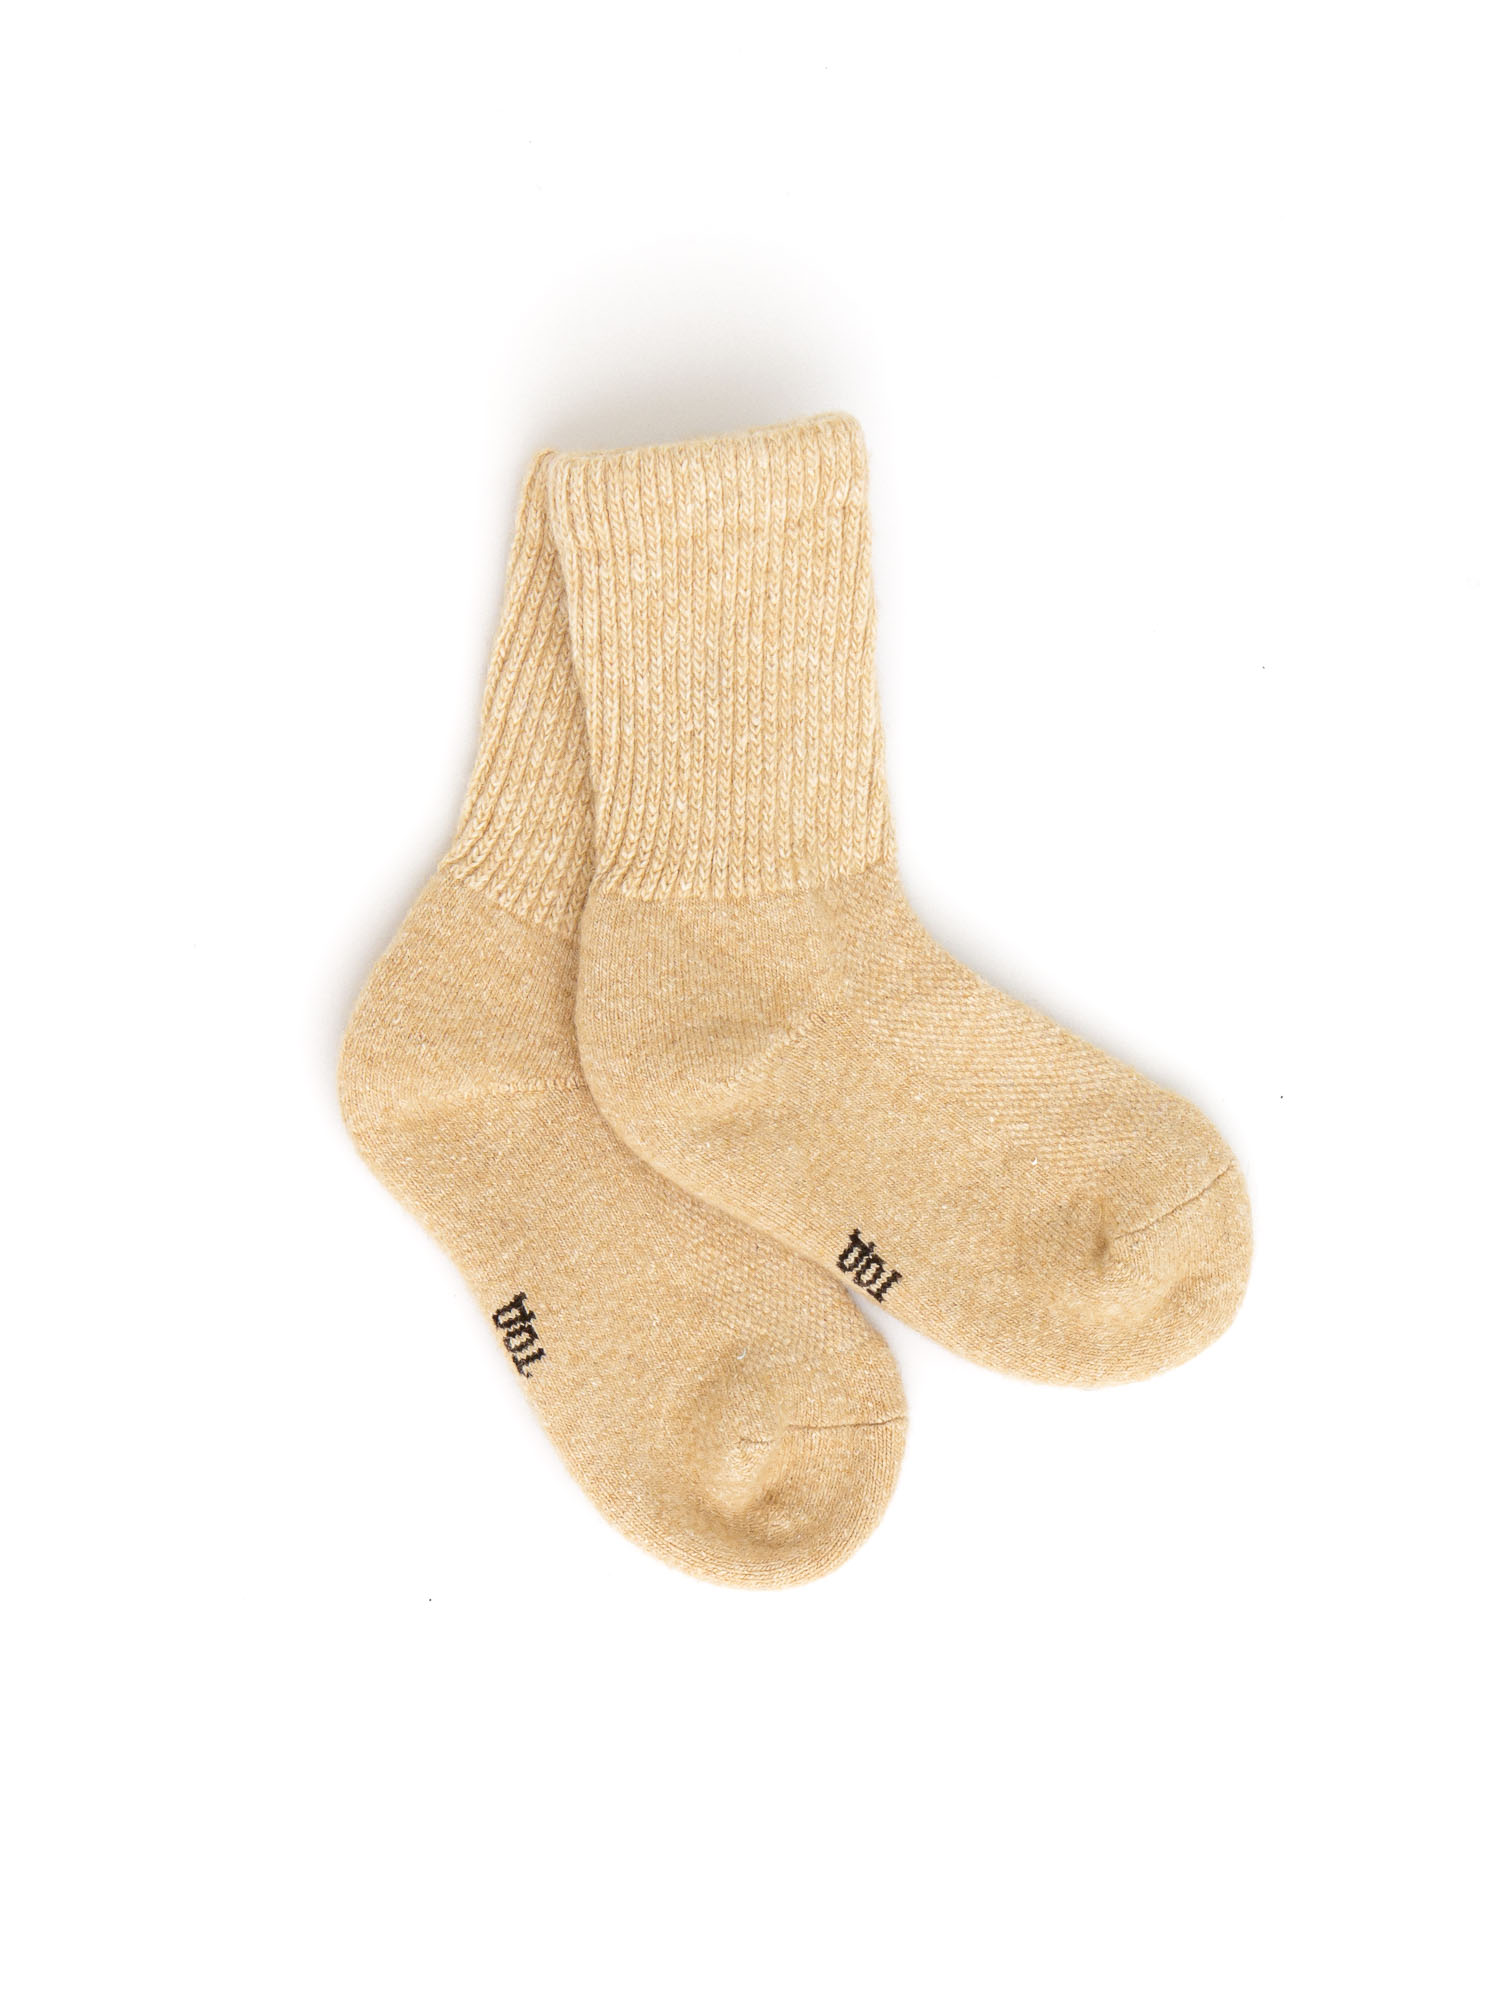 Детские носки из монгольской шерсти бежевые 1 (10-12см) ТОД ОЙМС ХХК, цвет бежевый, размер 1 (10-12 см) Детские носки из монгольской шерсти бежевые 1 (10-12см) - фото 1